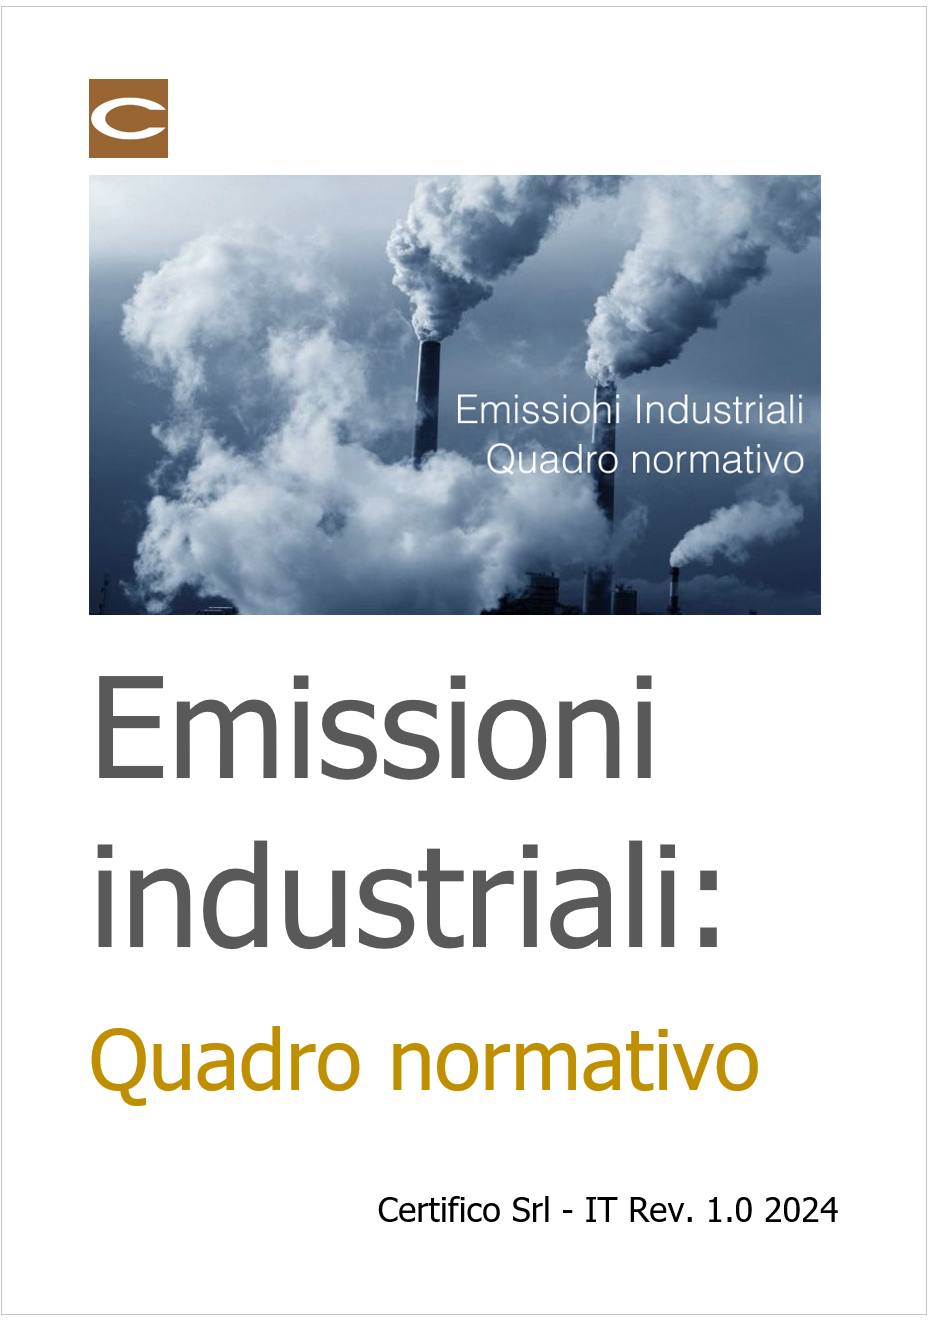 Emissioni industriali Quadro normativo 2024